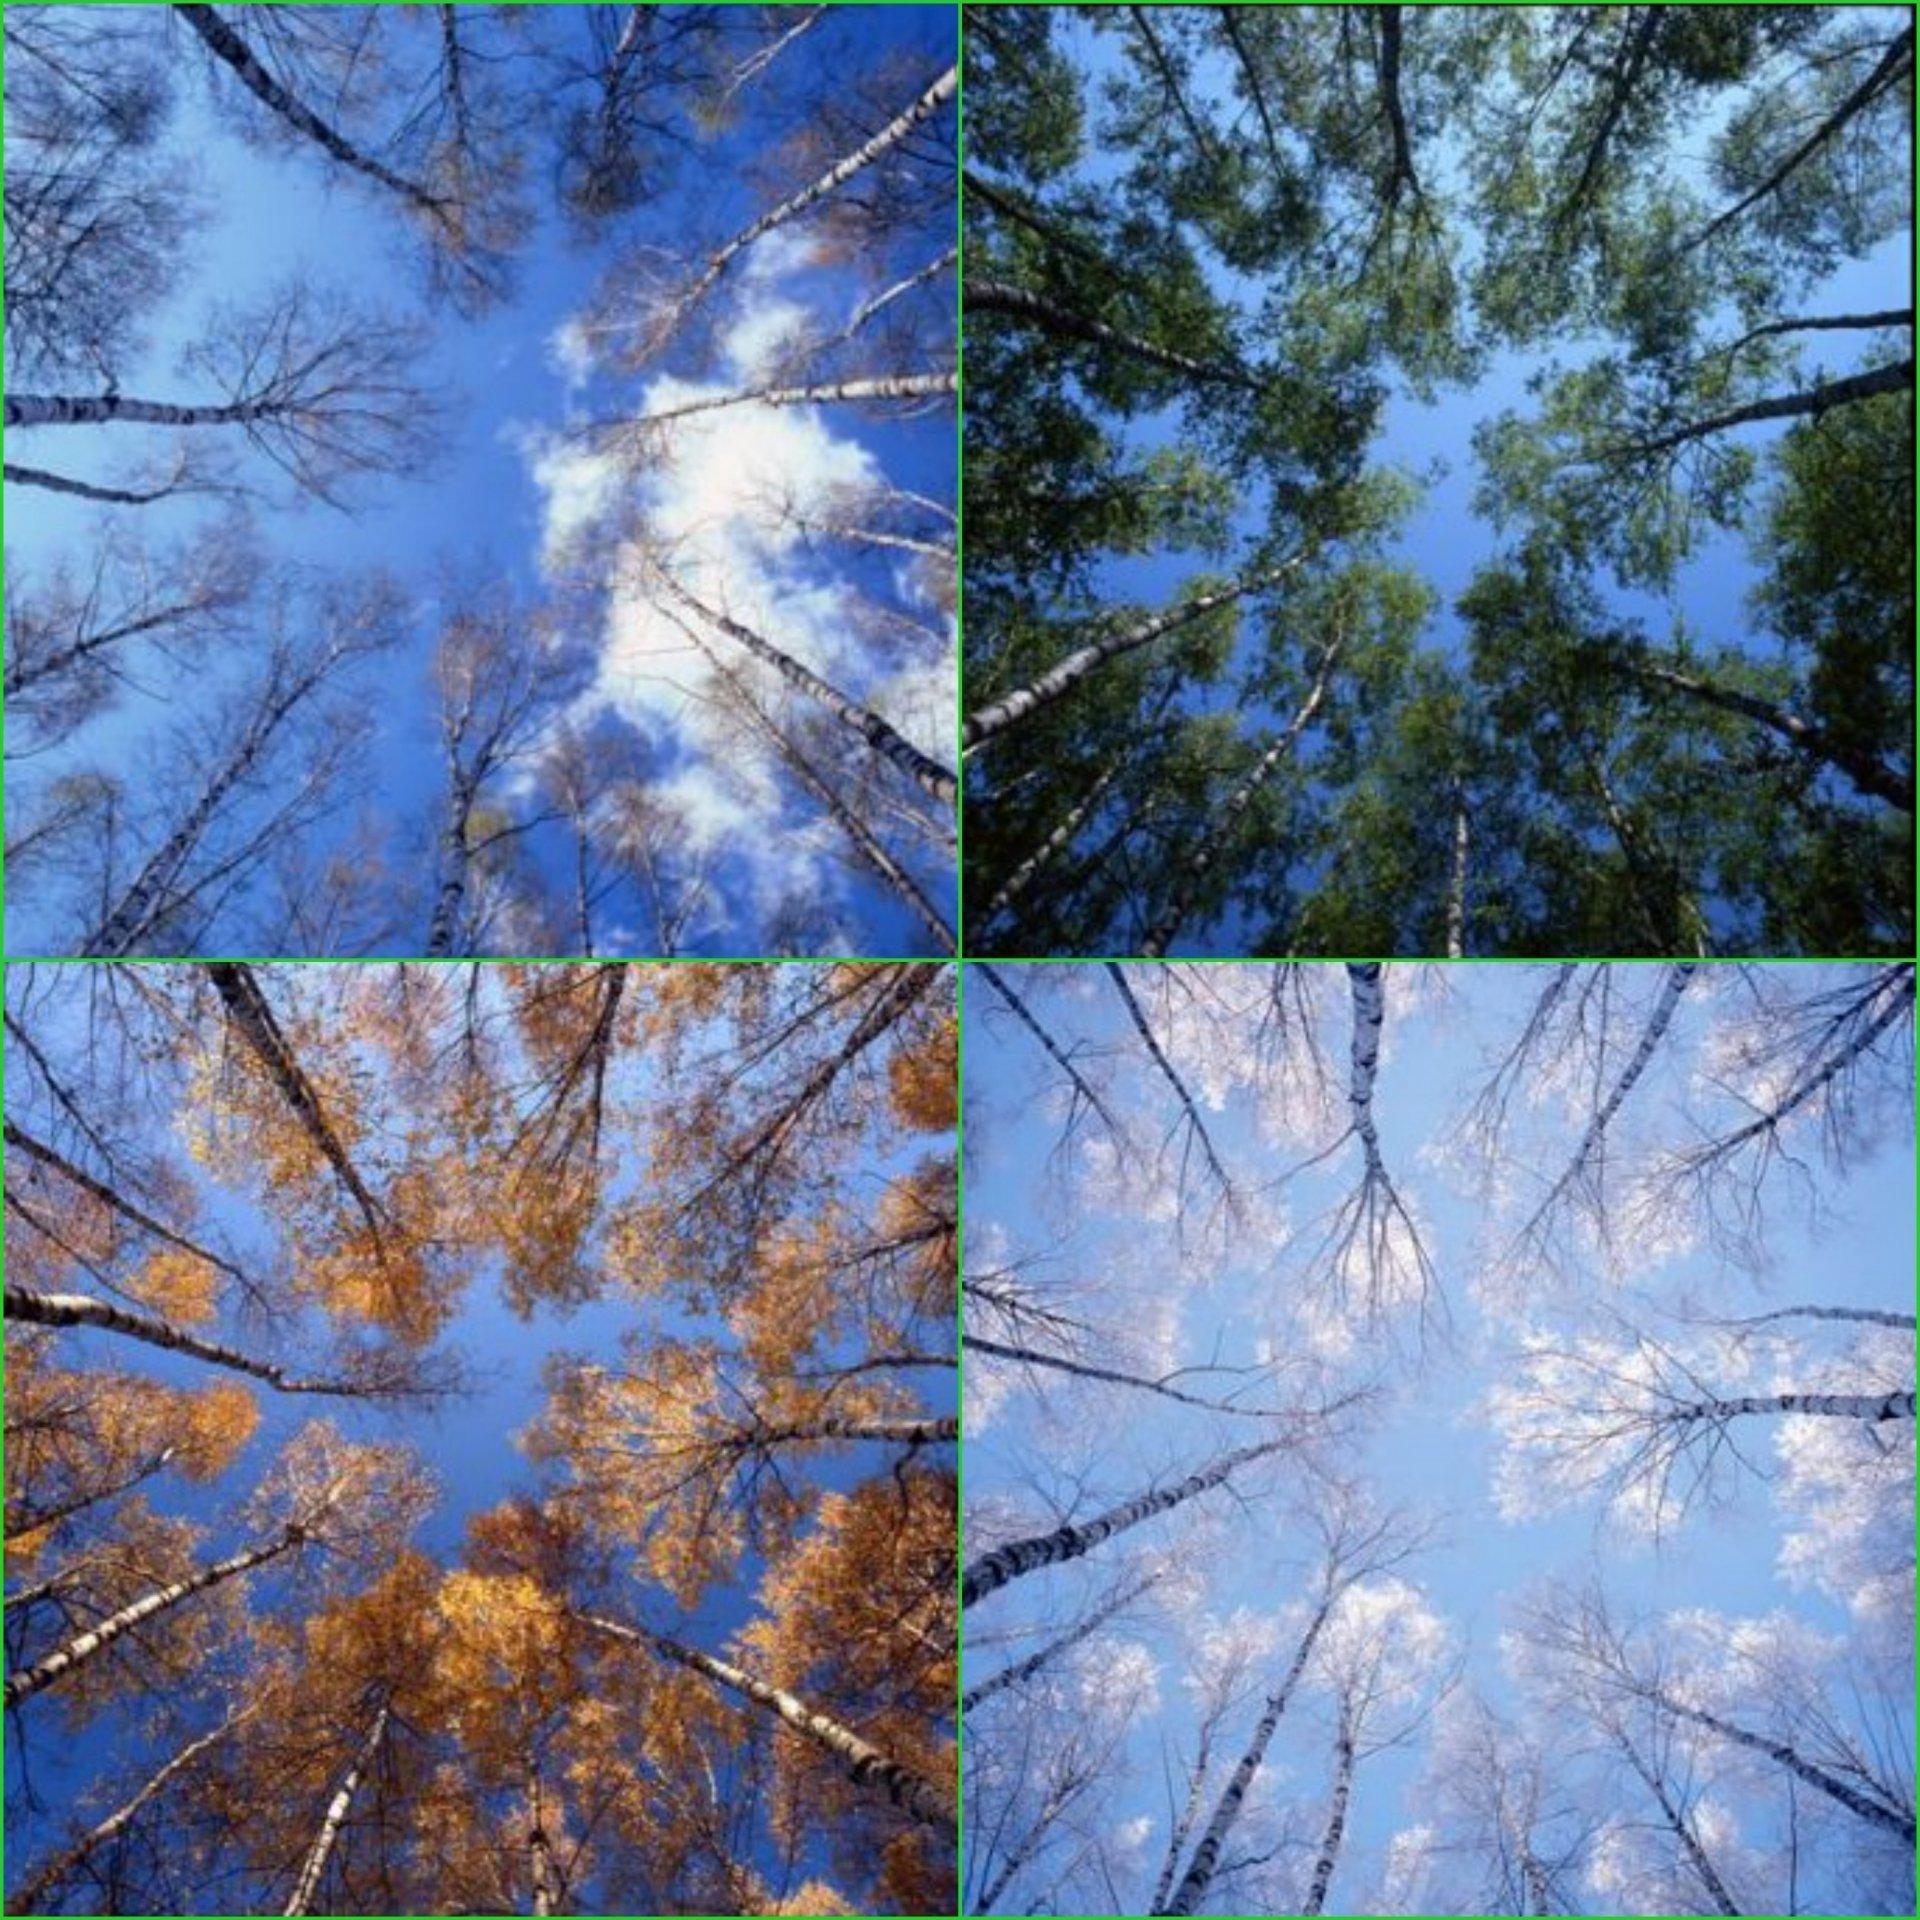 весна лето осень зима вектор деревьев PNG , весна, лето, падение PNG  картинки и пнг PSD рисунок для бесплатной загрузки